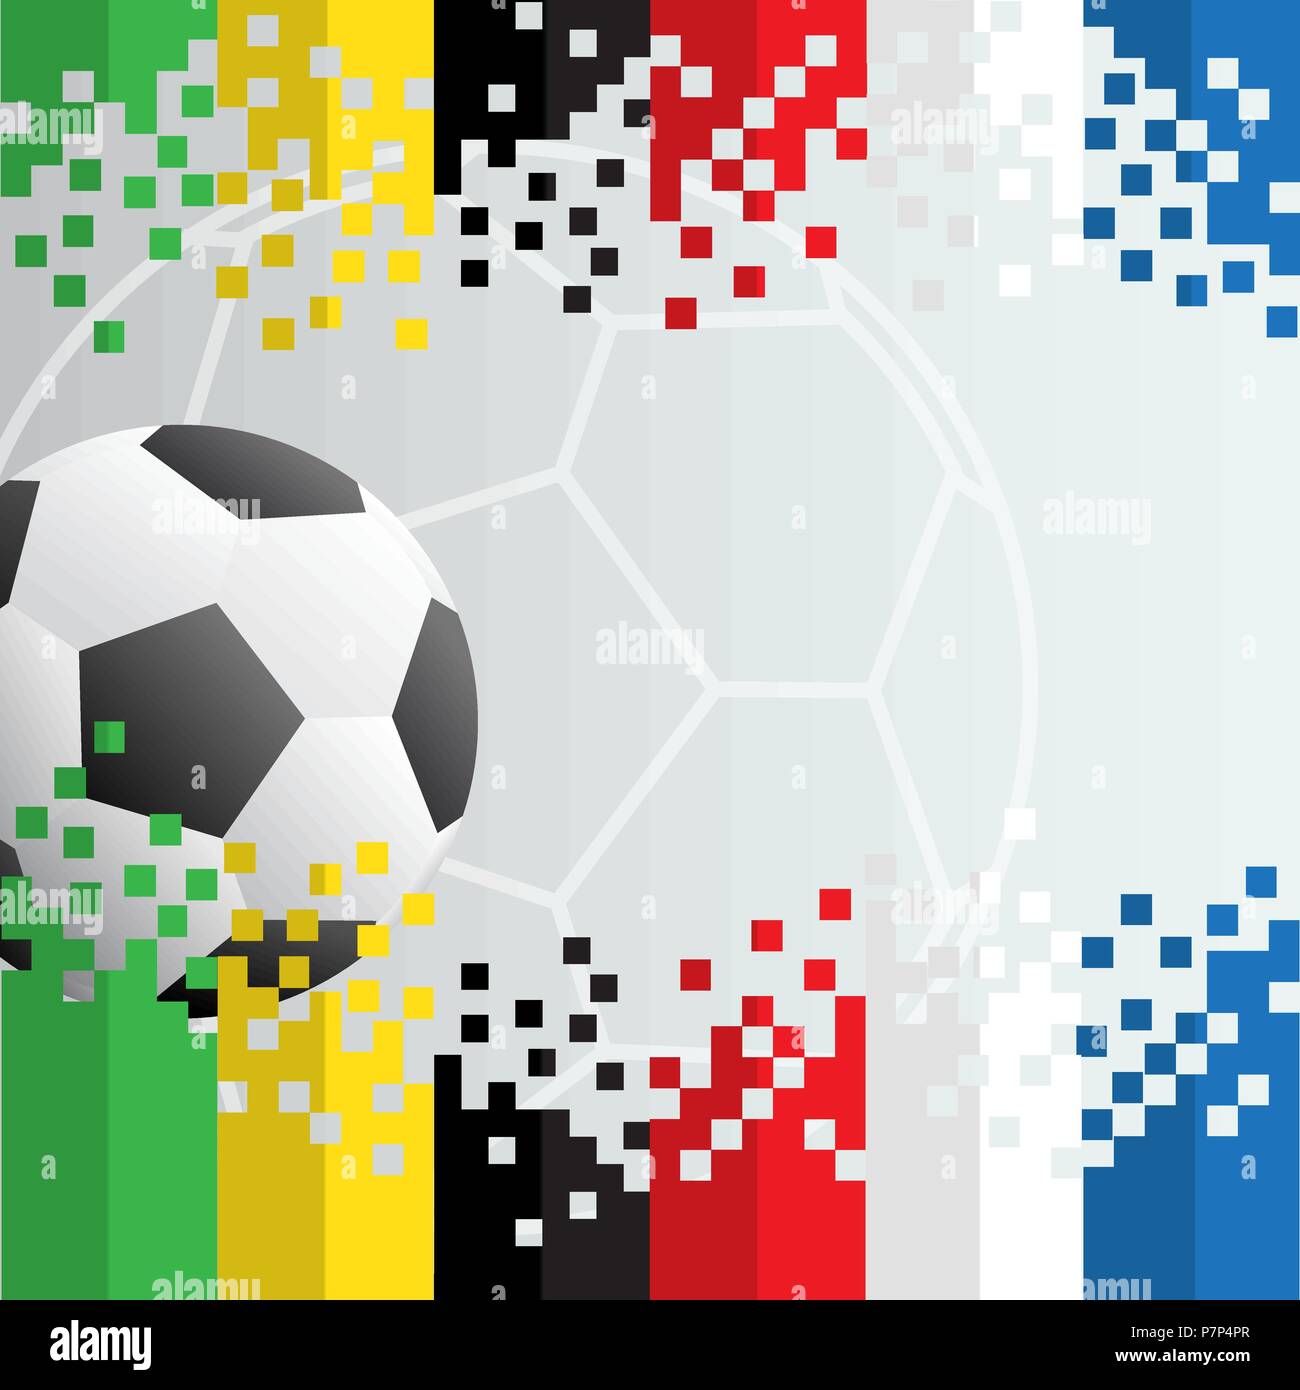 Fußball-Hintergrund, realistisch Ball mit kostenlose Kopie. Vector Illustration für die Fußball-Weltmeisterschaft, Spiele, das Stadion, Turnier Stock Vektor